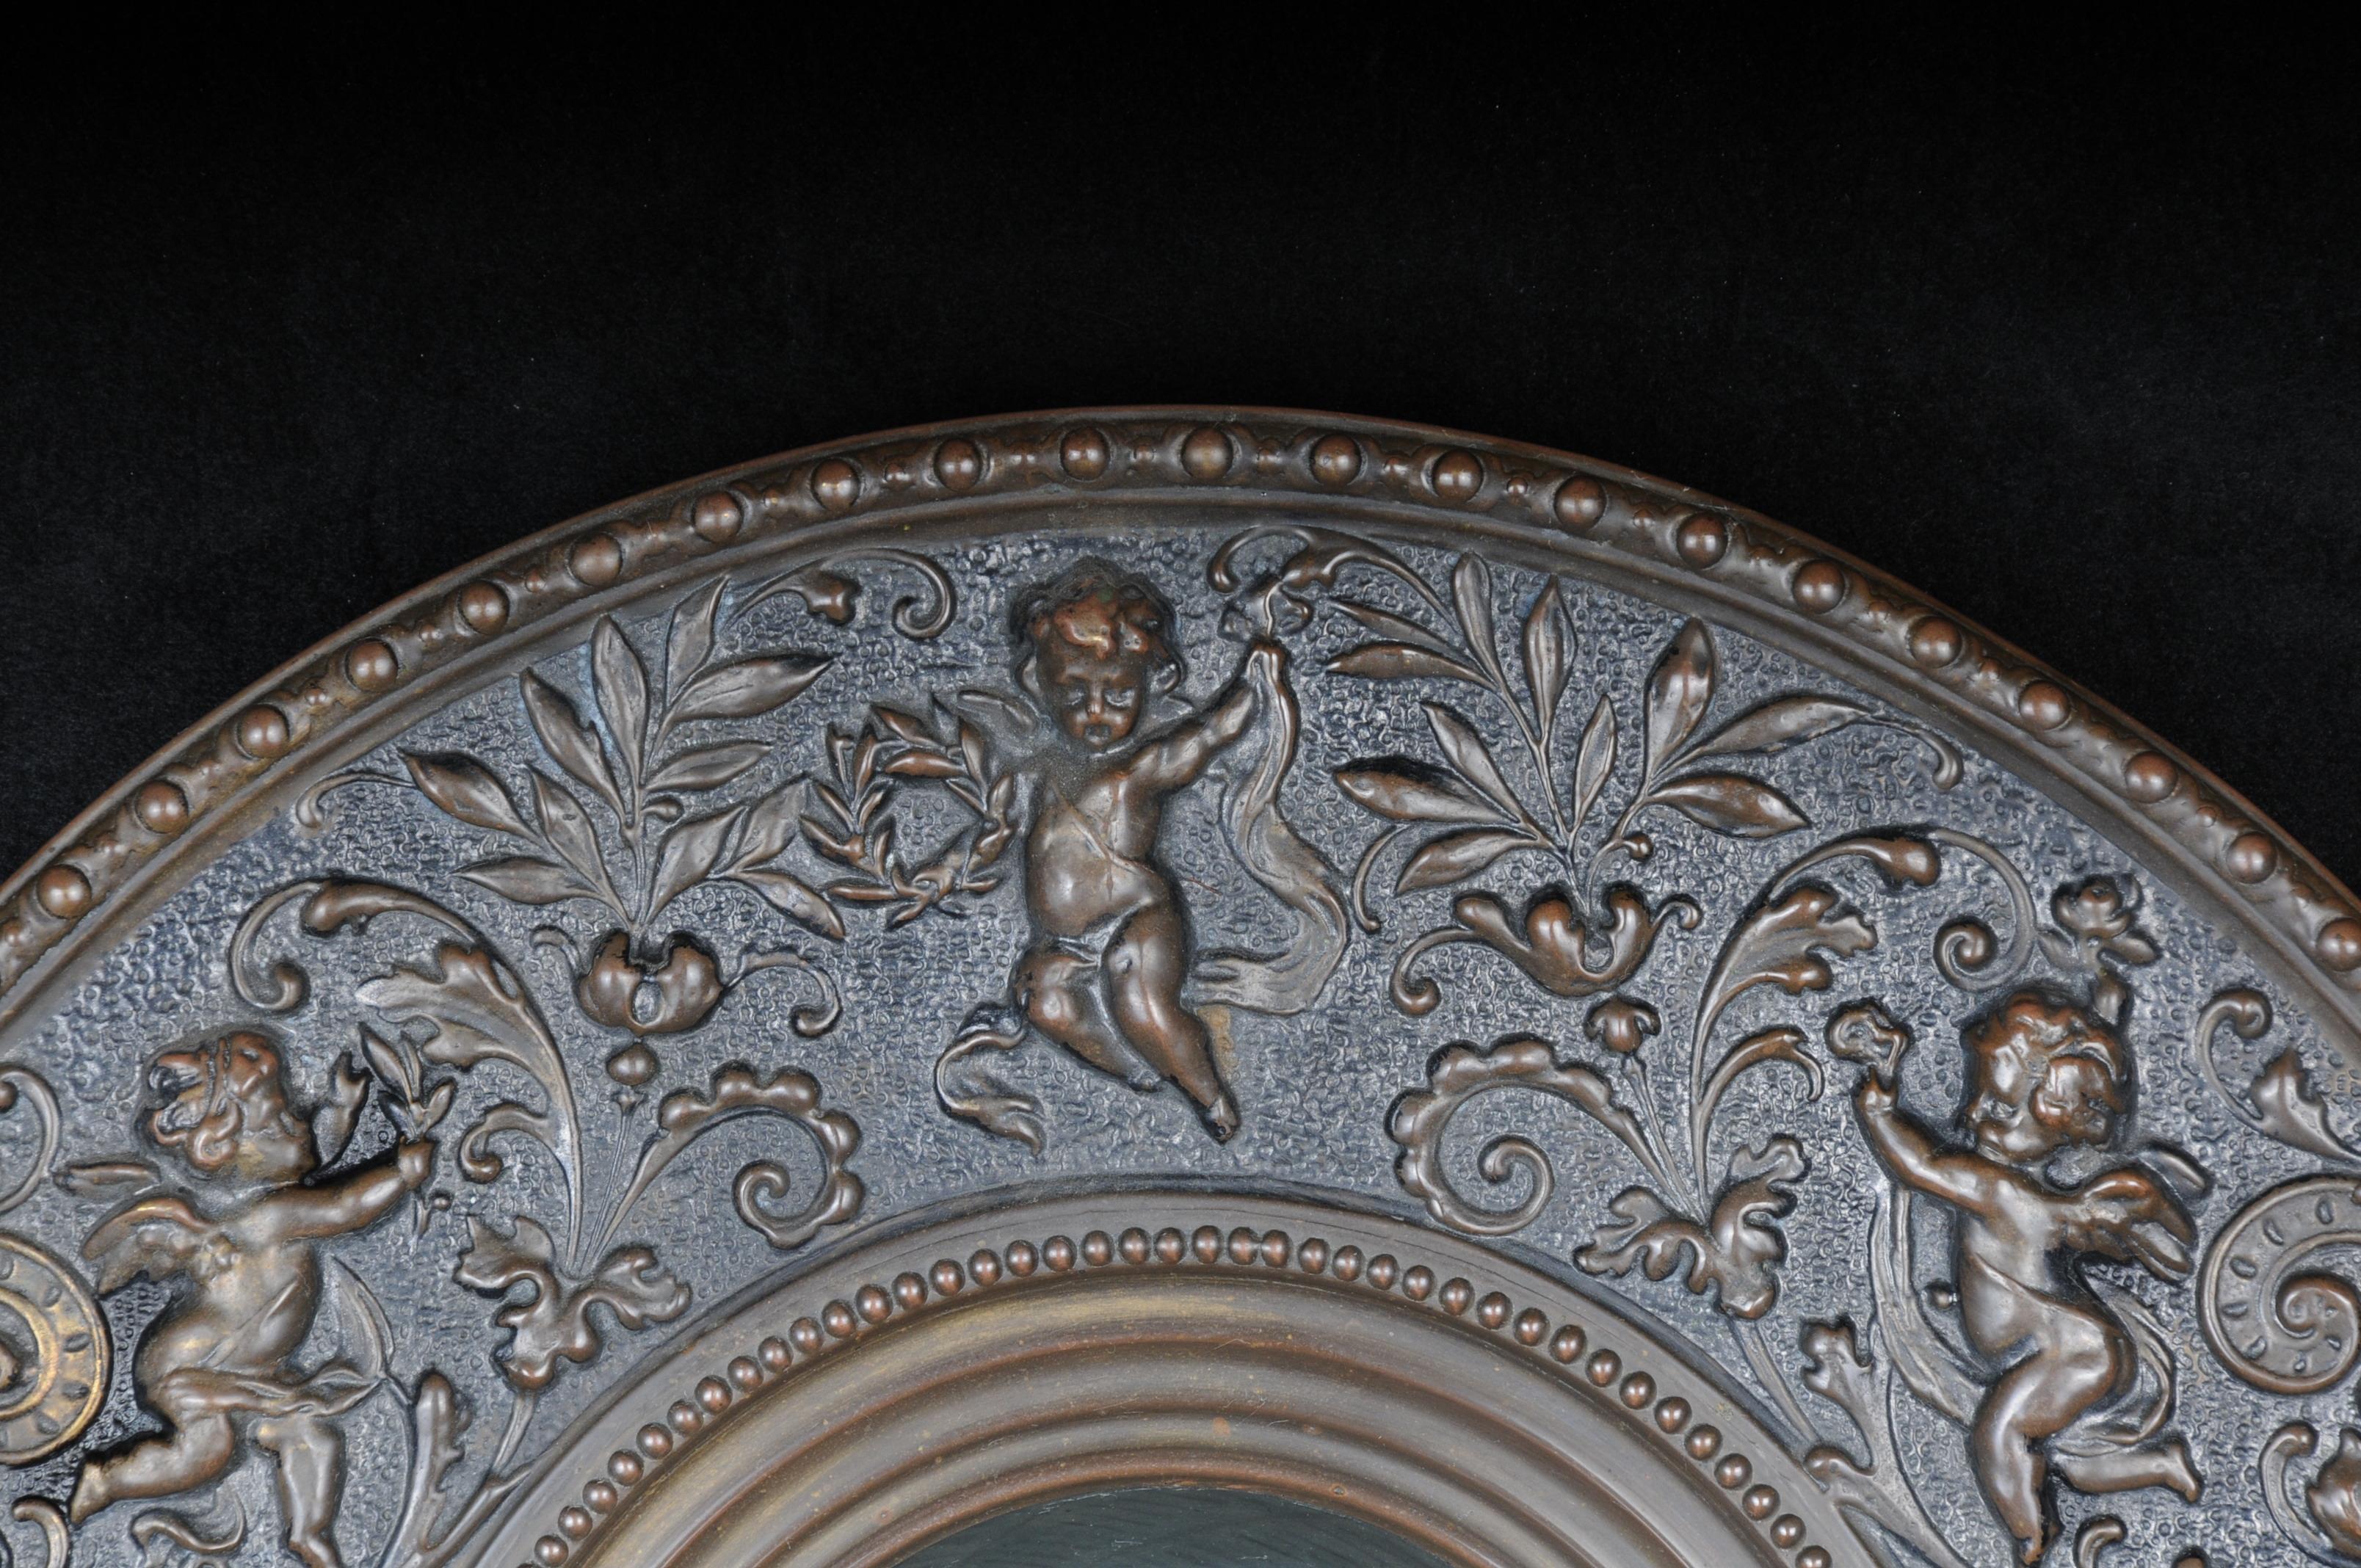 Ungewöhnliches Stück
Messingrelief mit Engeln und mit einem schönen bemalten Porzellanteller
Blick auf die Mönche im Keller

(V-208).